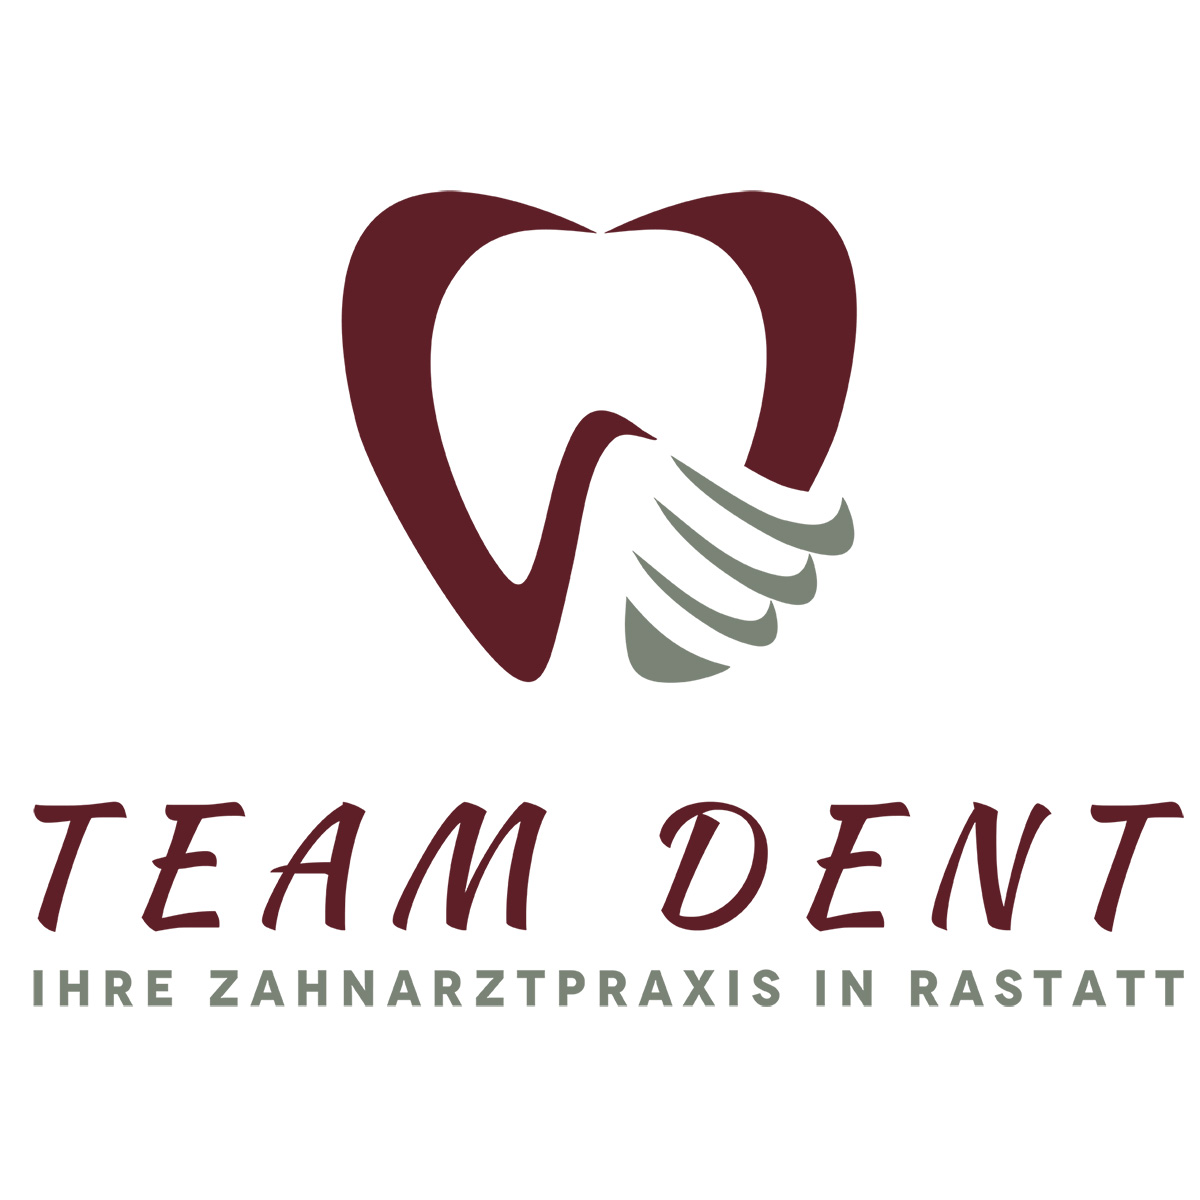 Kundenbild groß 4 Zahnarztpraxis Rastatt TEAM DENT